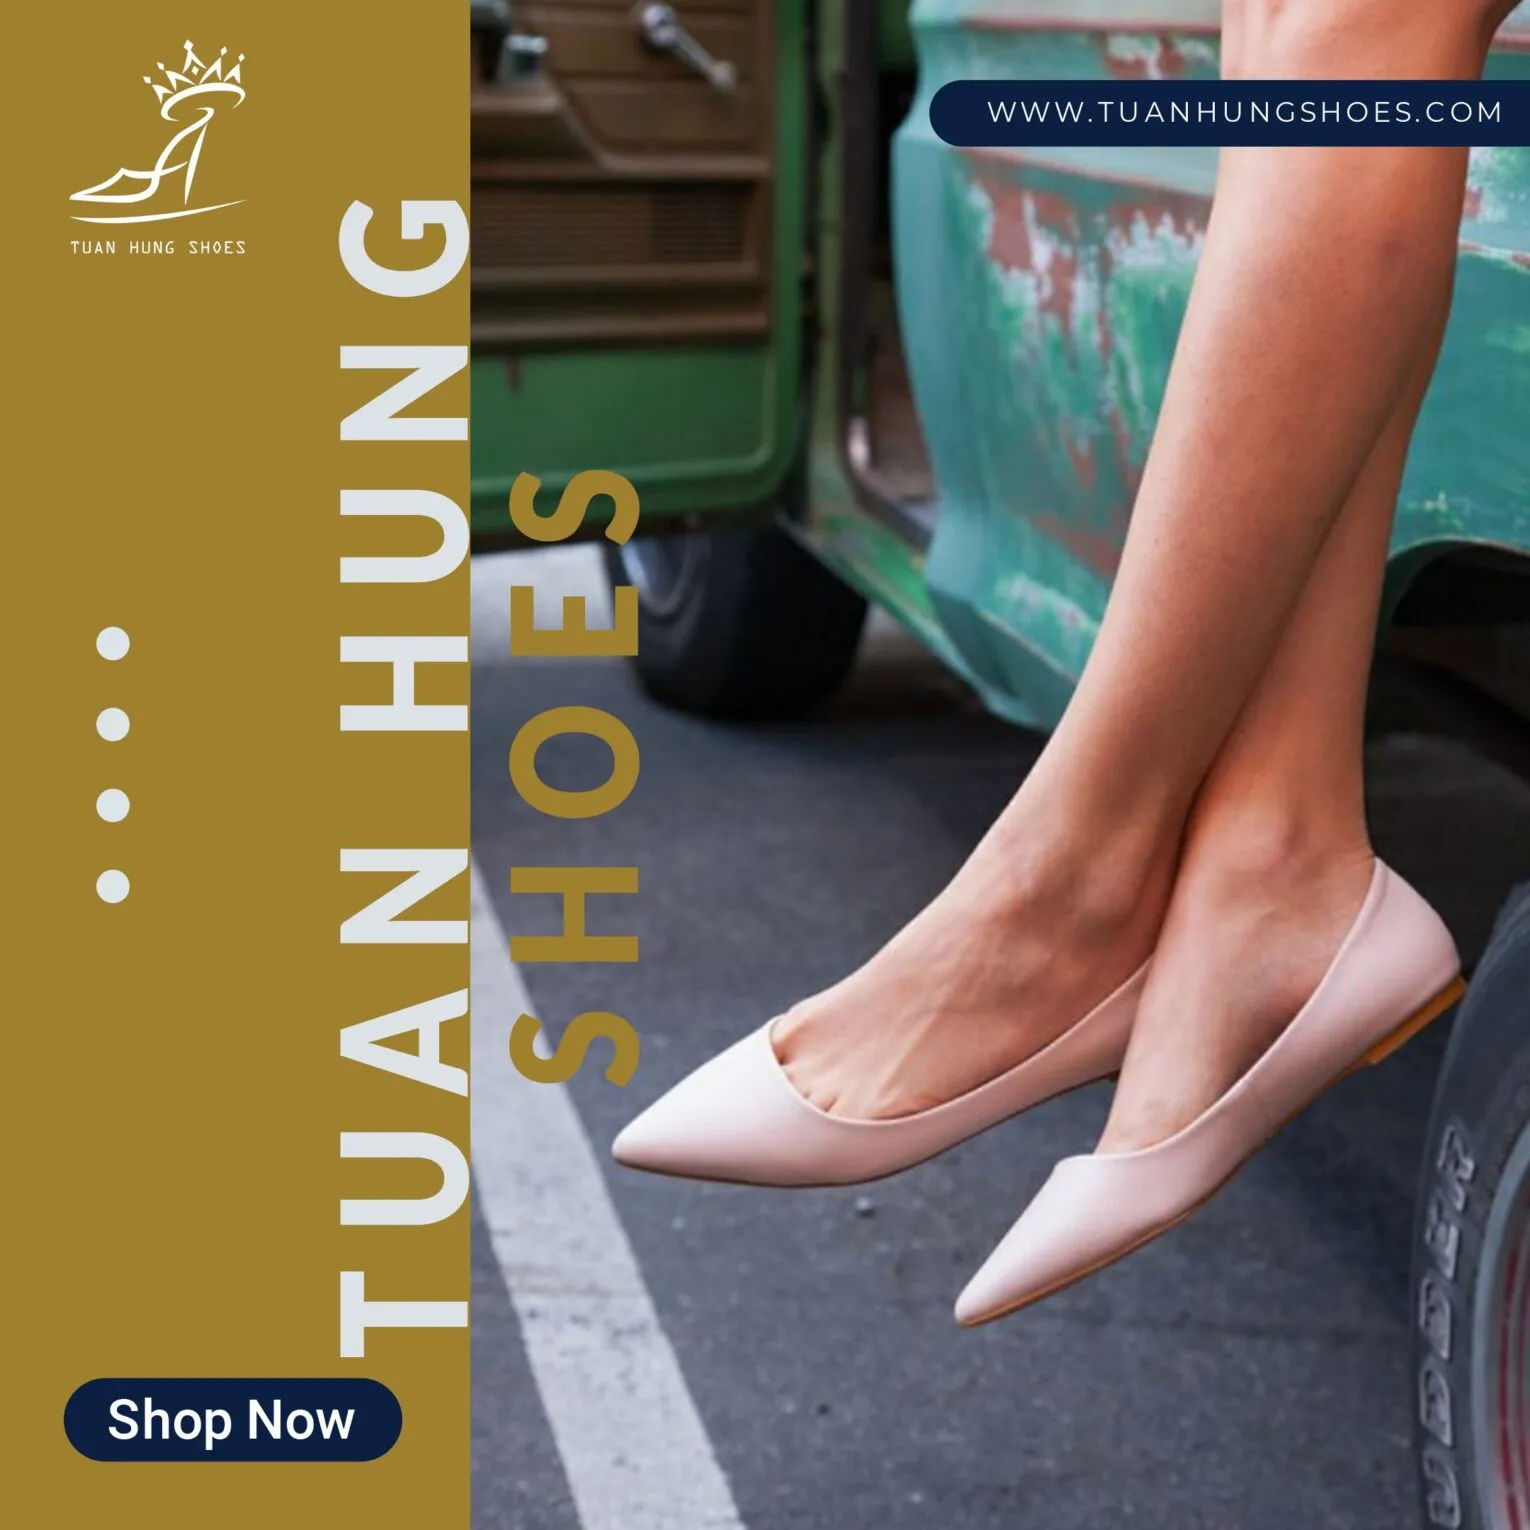 Giày búp bê nữ được sử dụng rộng rãi cho nhiều đối tượng khách hàng